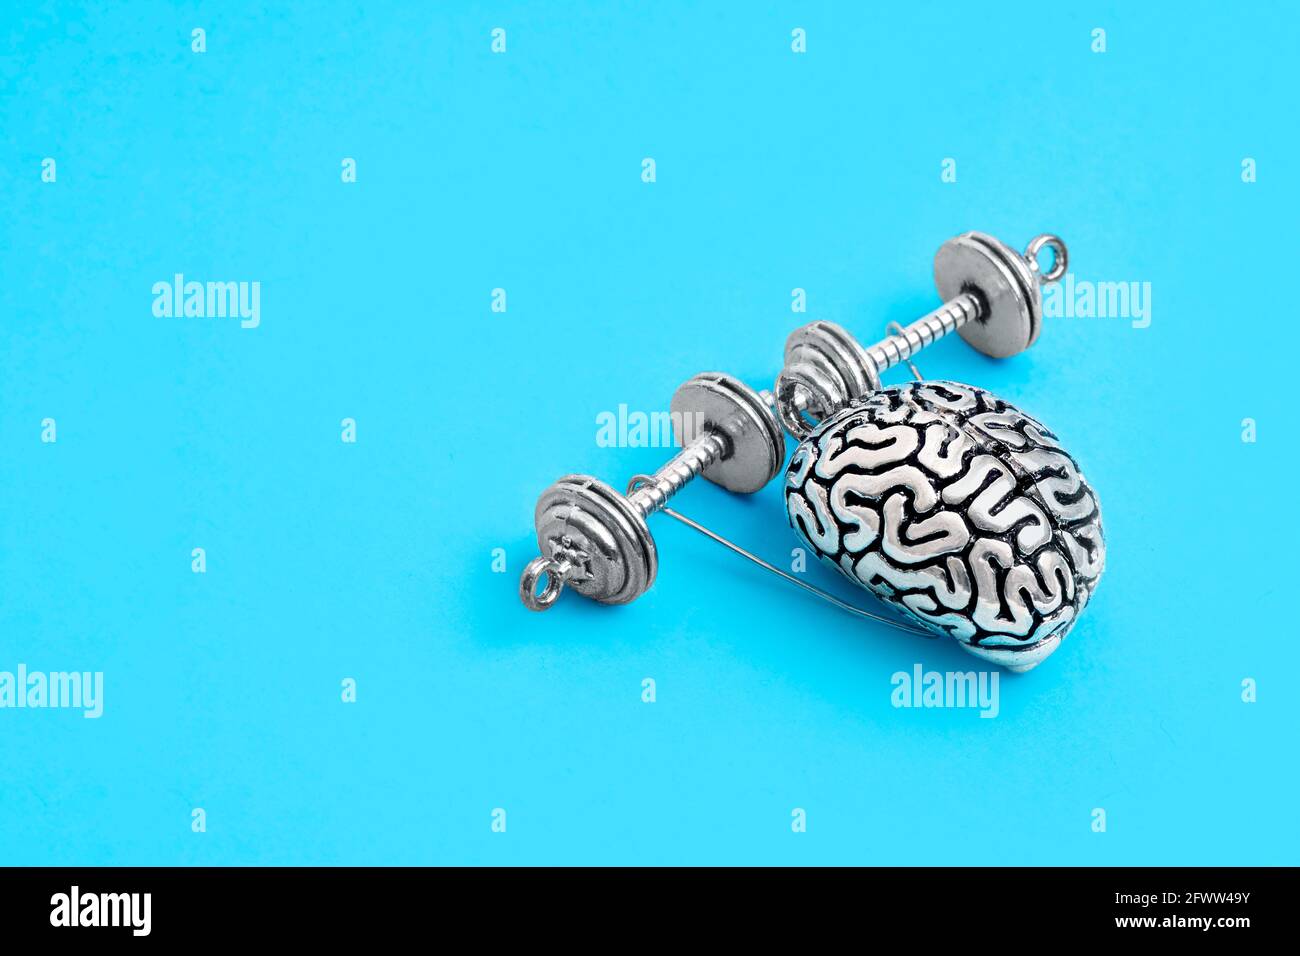 Copia in acciaio del cervello umano con mani che sollevano manubri isolati su blu. Il concetto di miglioramento della memoria attraverso l'esercizio. Foto Stock